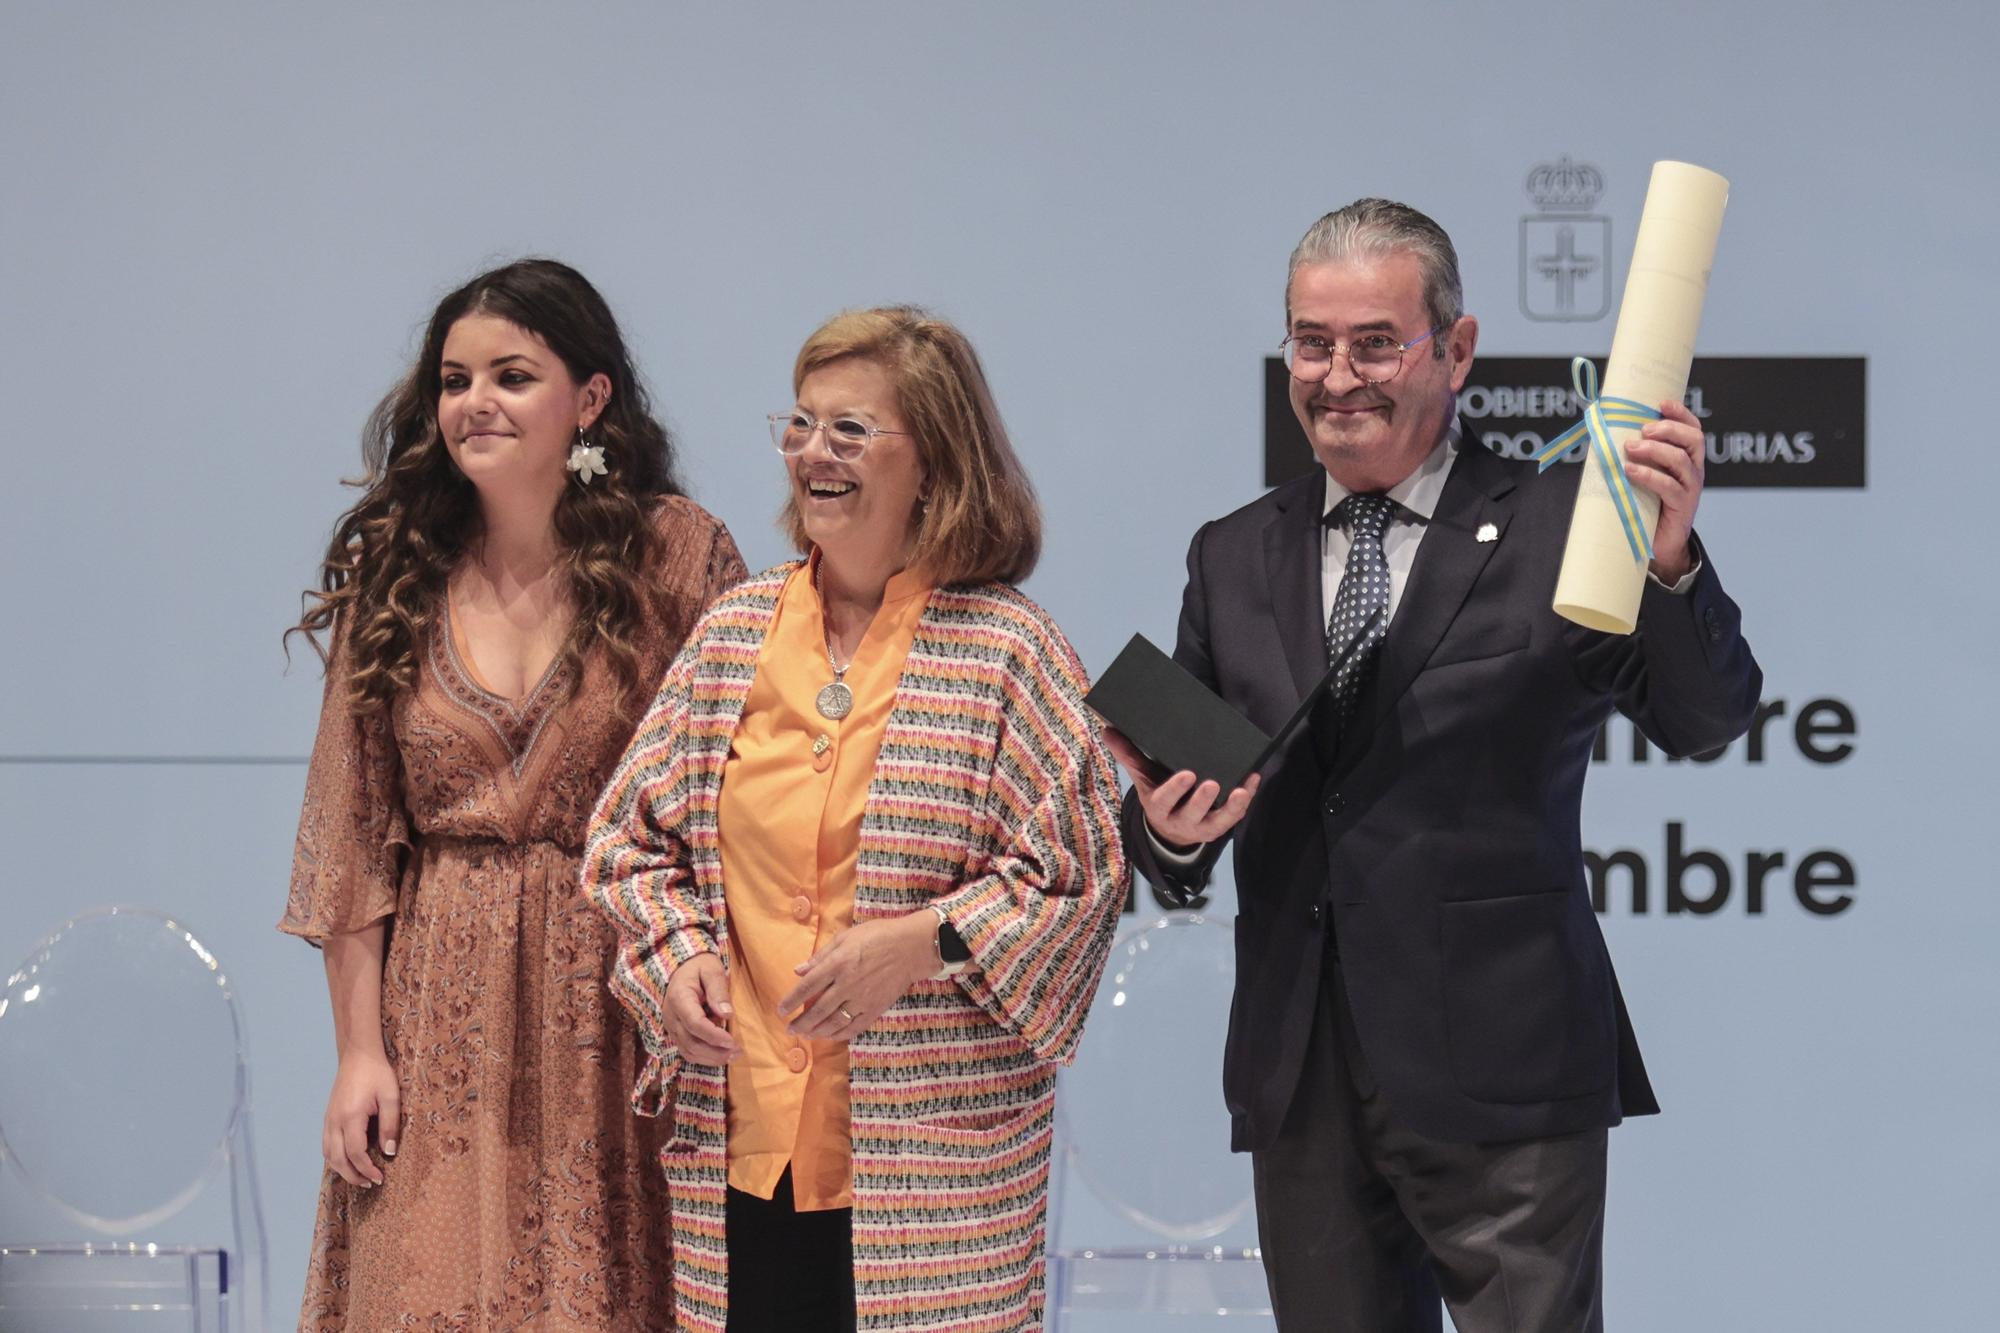 En imágenes: así fue el acto de entrega de las Medallas de Asturias